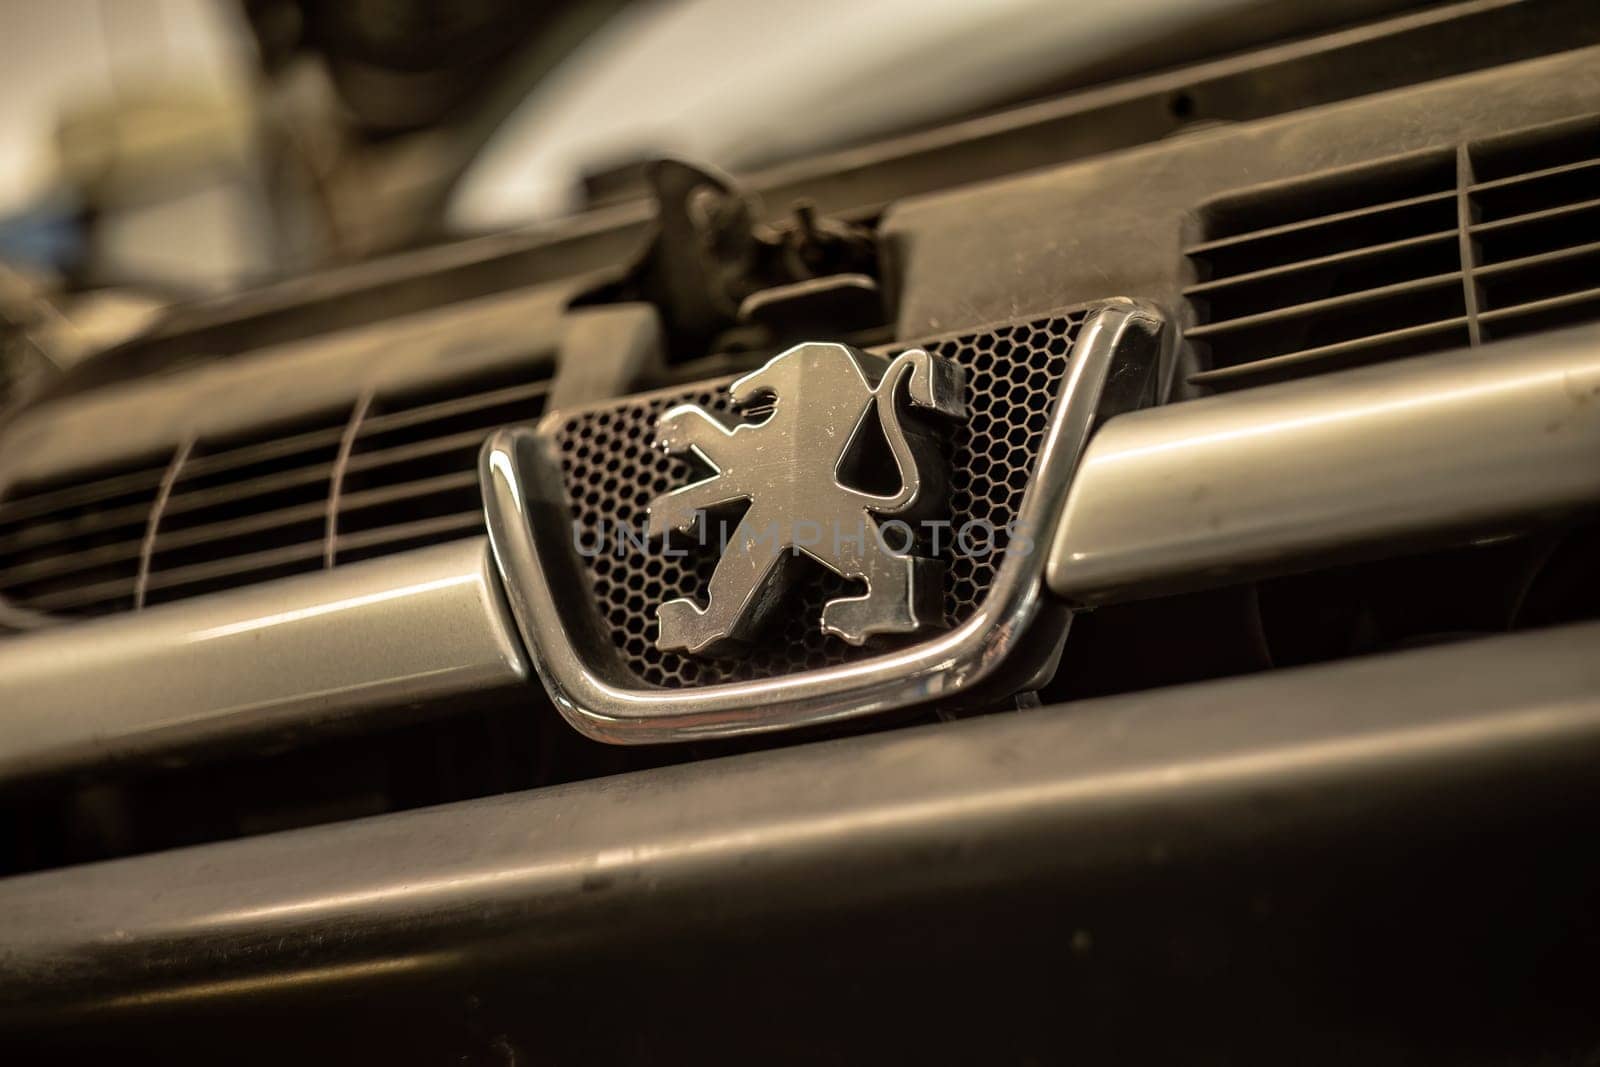 Peugeot Emblem Detail by pippocarlot